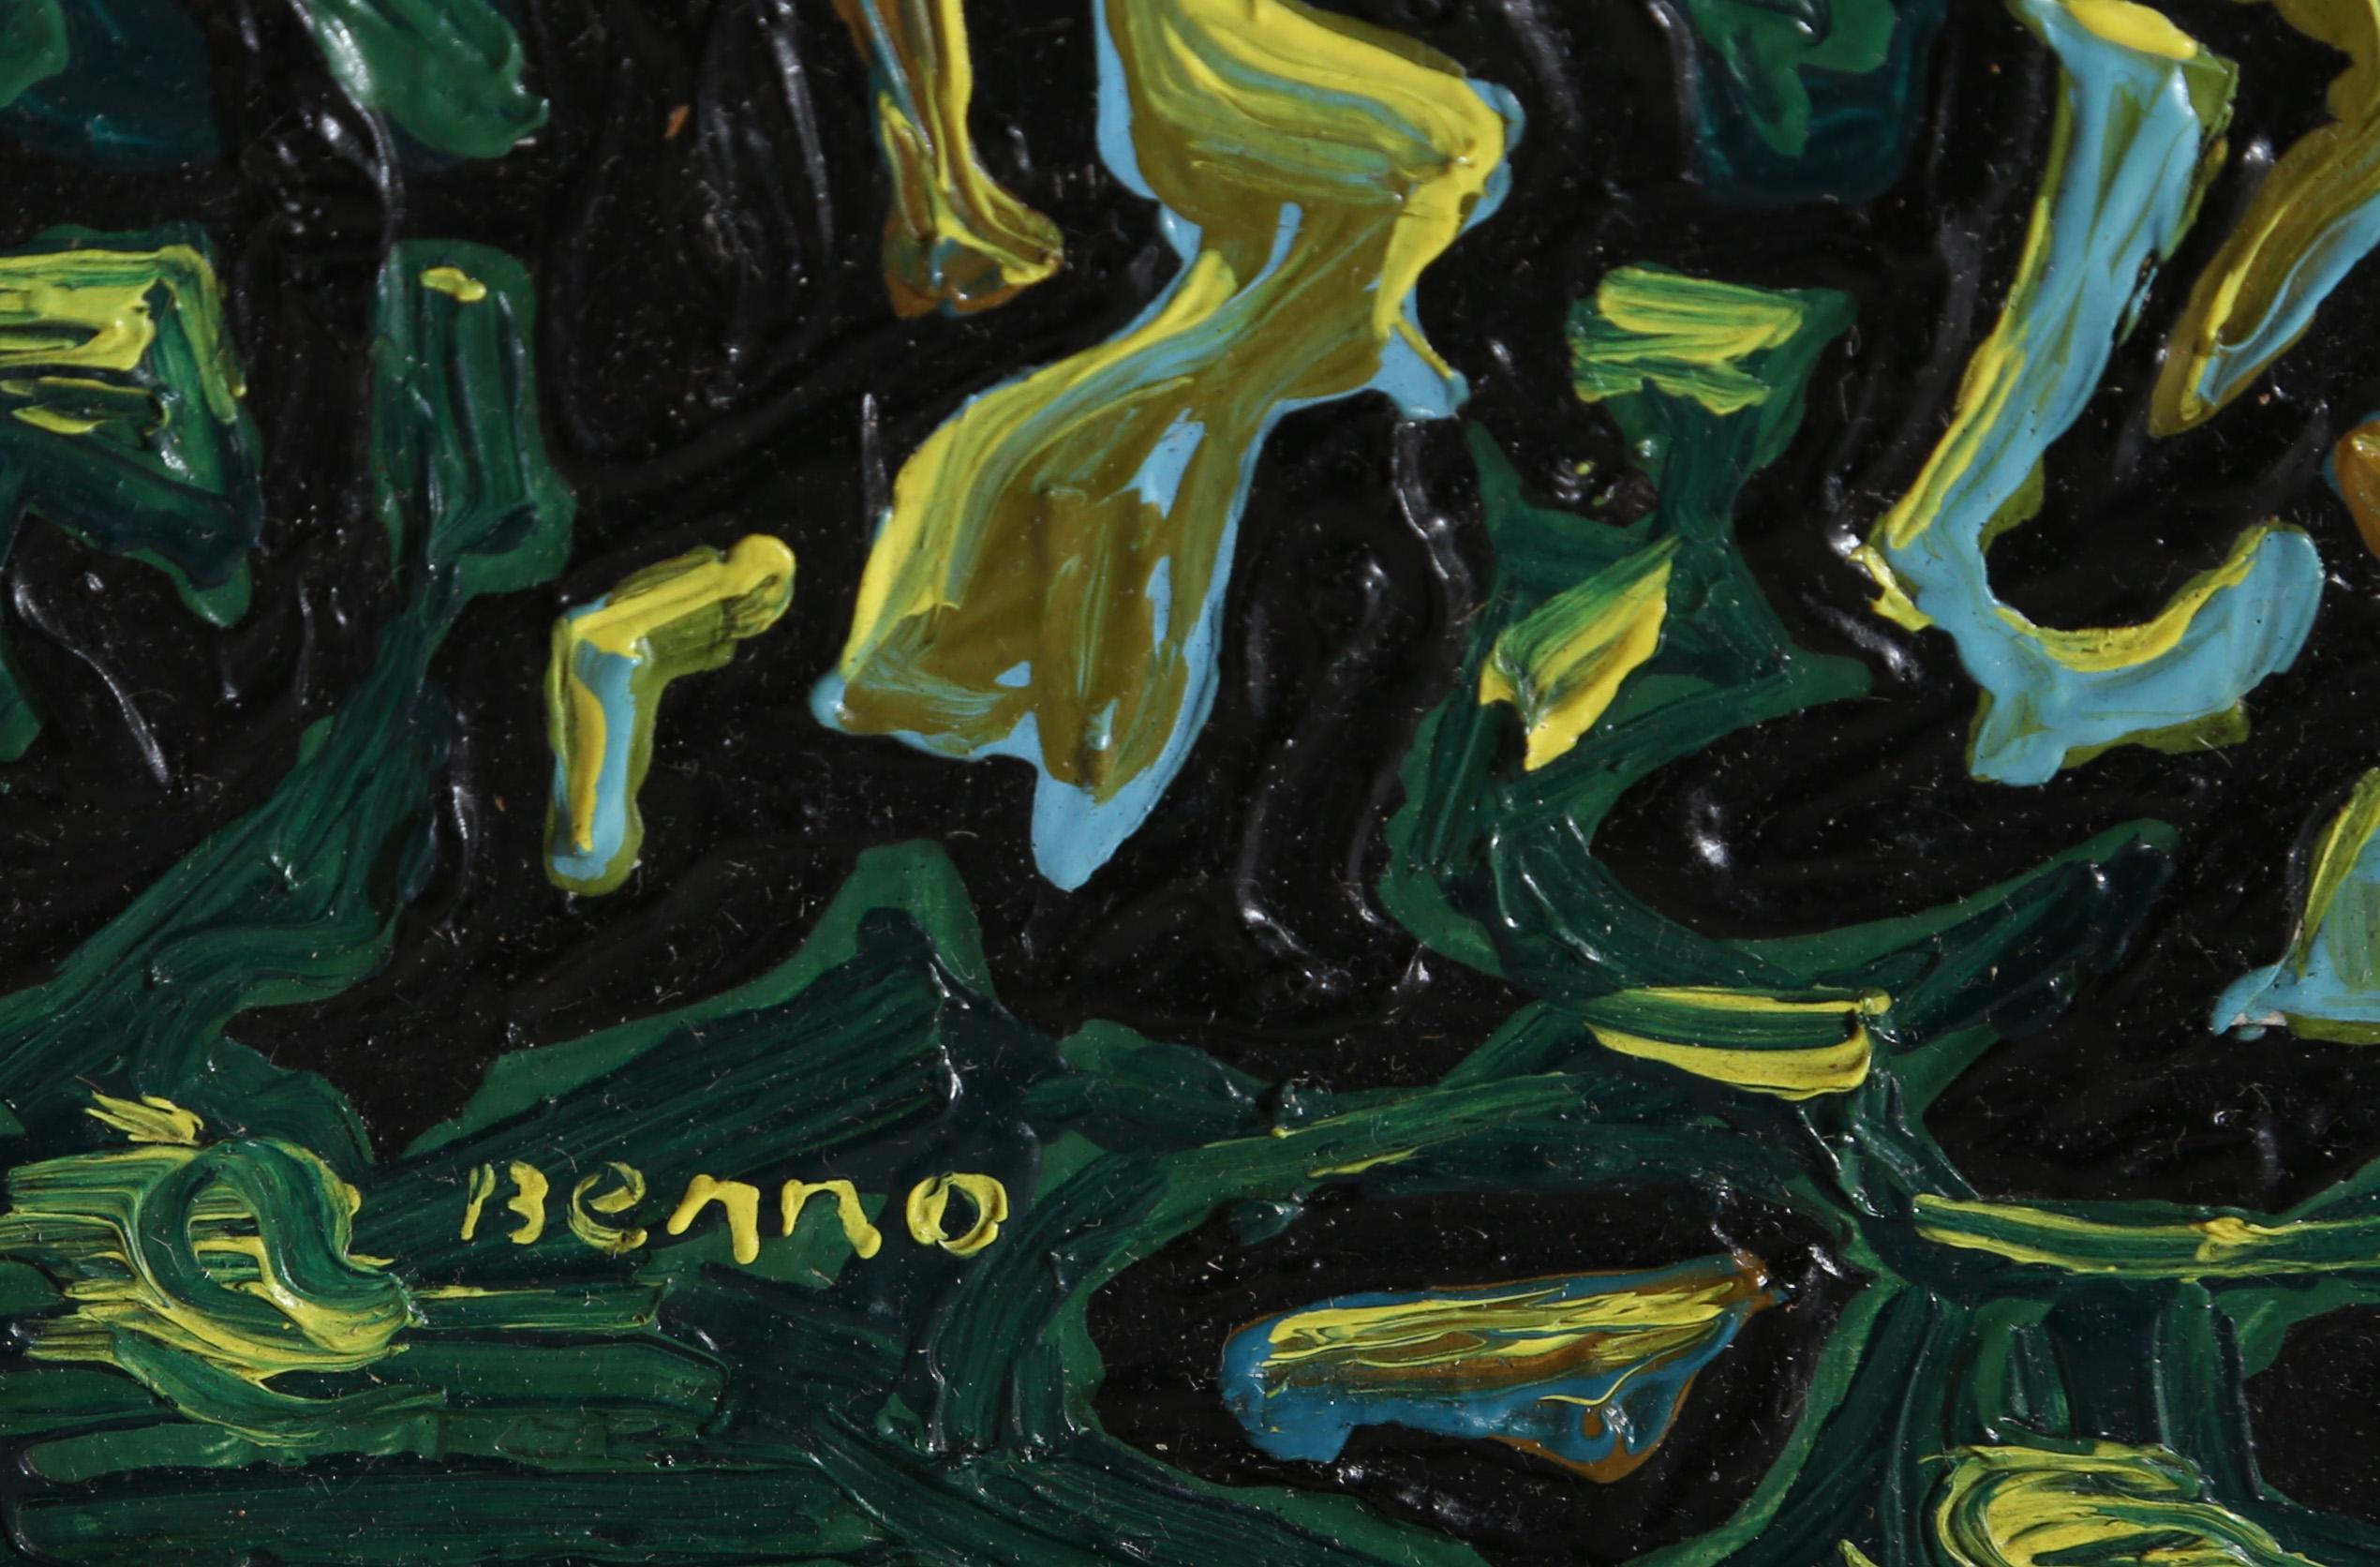 Vor einem tiefgrünen Hintergrund aus Farbschichten und Wellenlinien zeigt Benjamin Bennos strukturierte Komposition eine Reihe von nicht identifizierbaren Figuren unterschiedlicher Größe und Form. Dieses dimensionale abstrakte Werk veranschaulicht